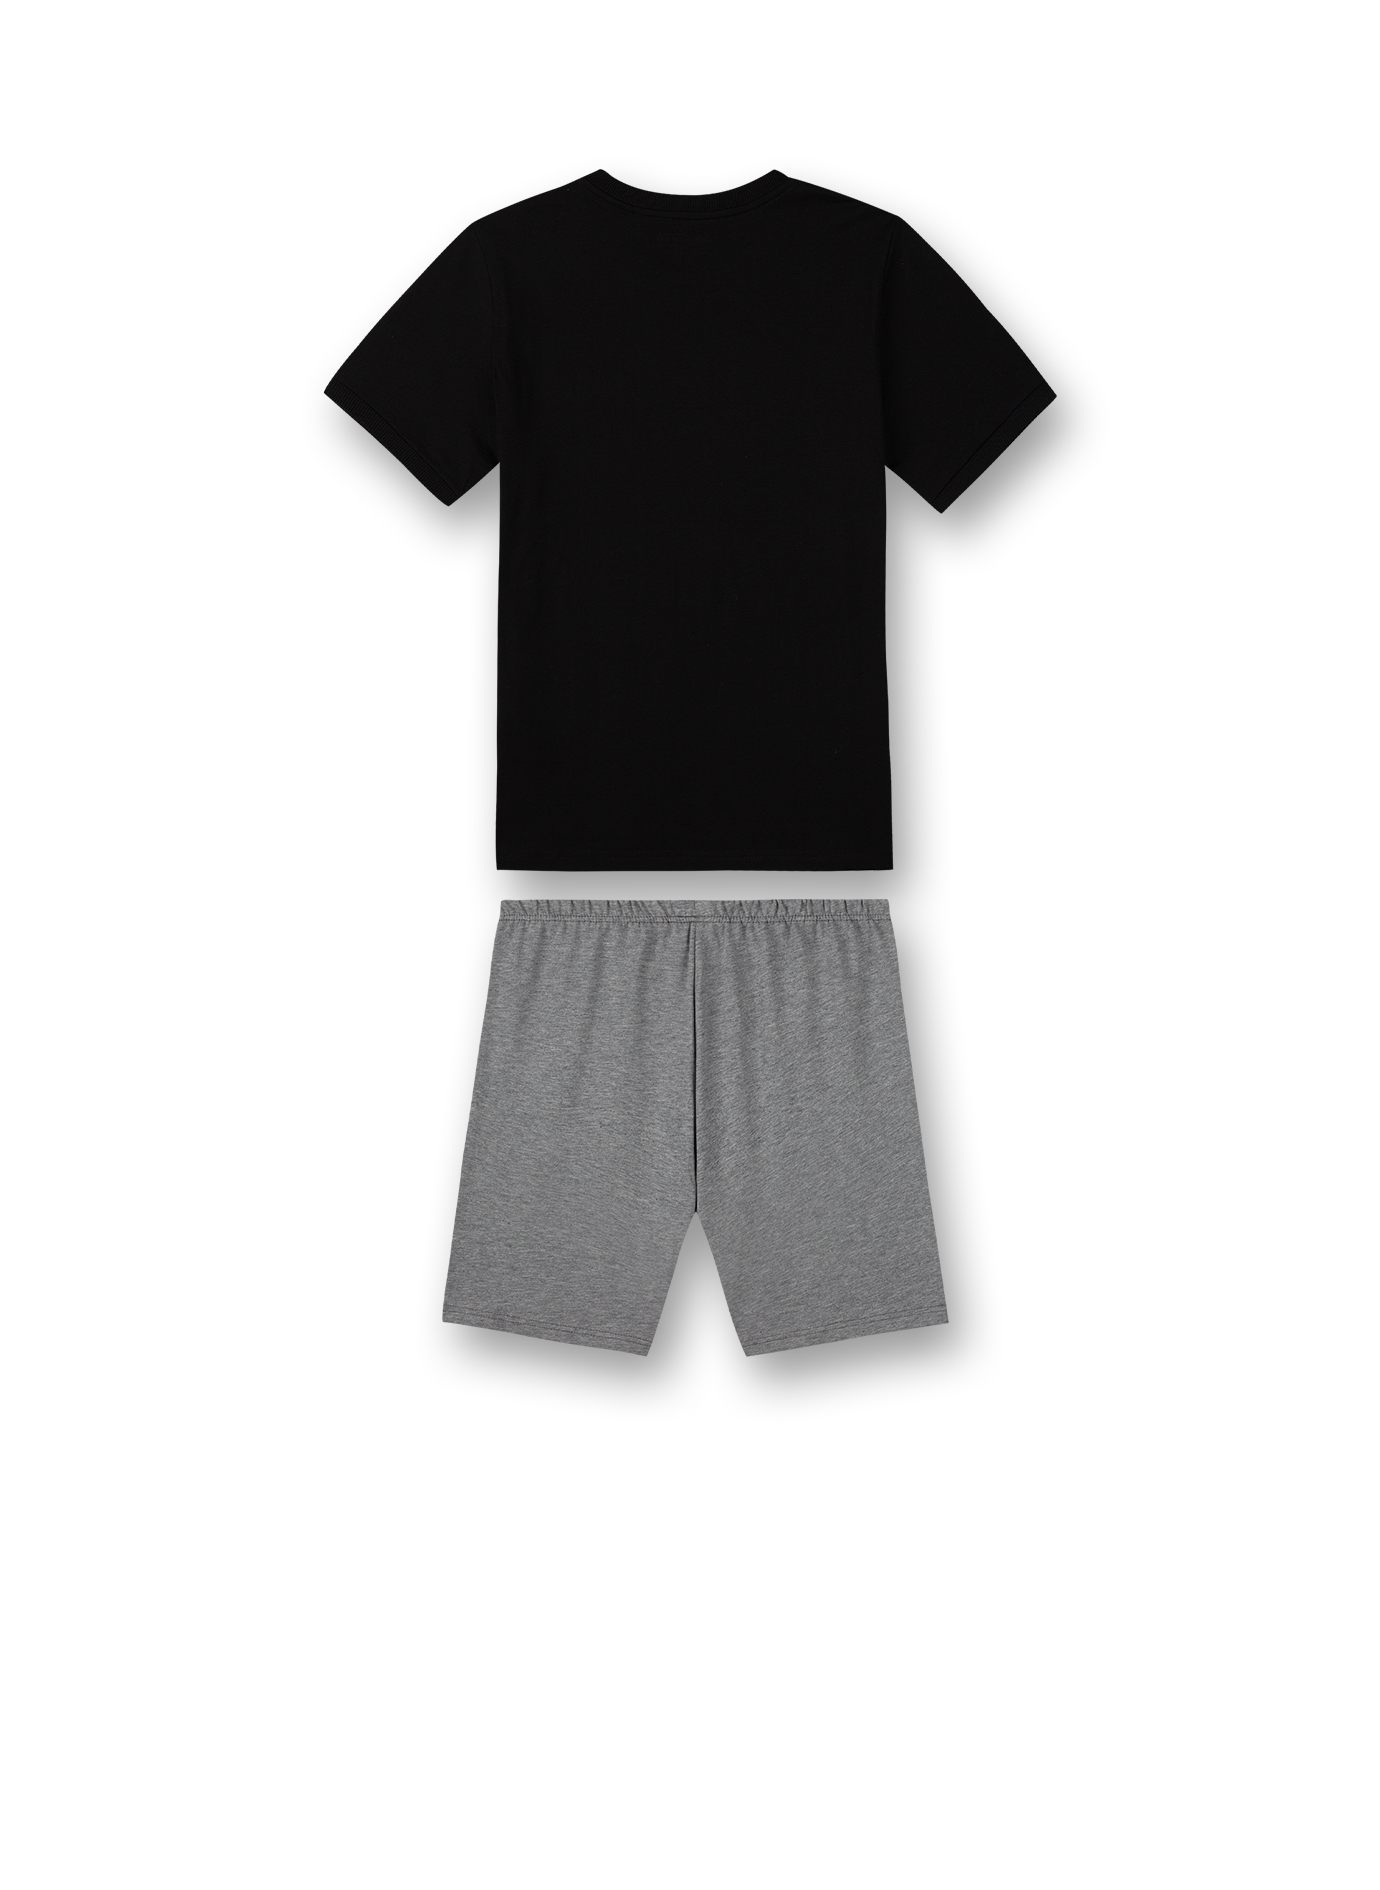 Jungen-Schlafanzug kurz Schwarz